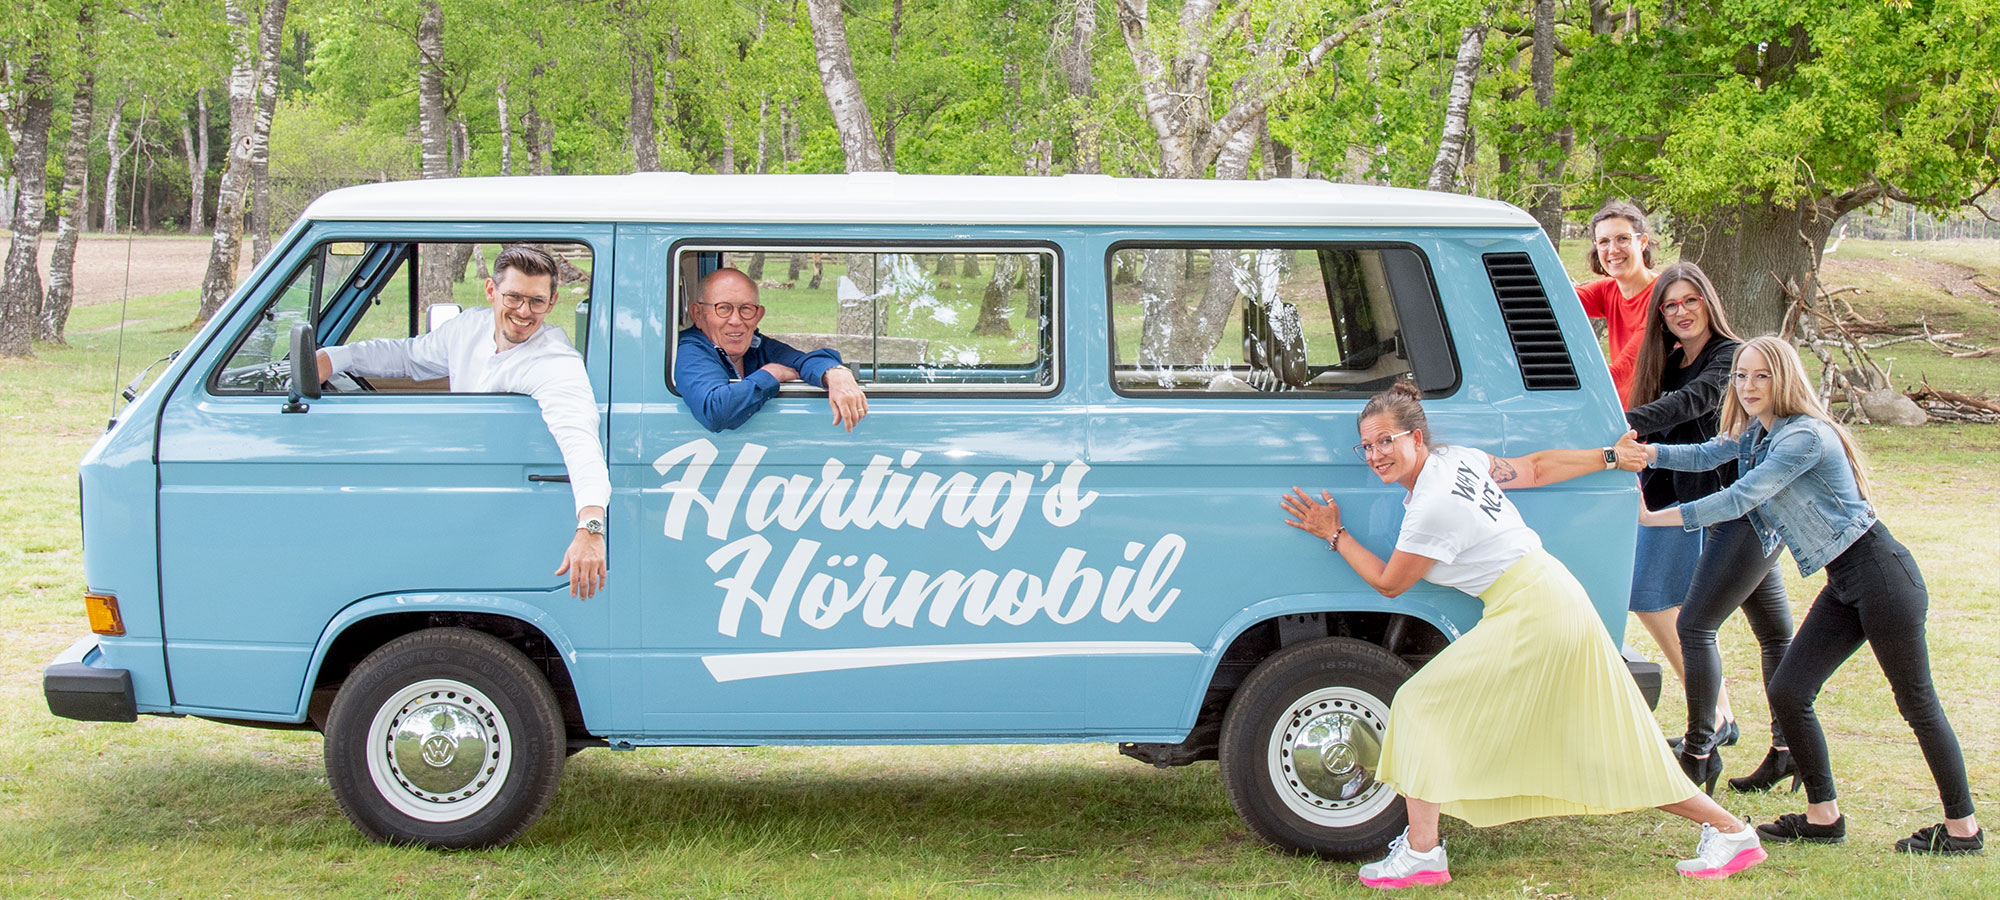 Gruppenfoto vom Harting Team mit einem blauen Van. Aufschrift auf dem Van: "Harting's Hörmobil"